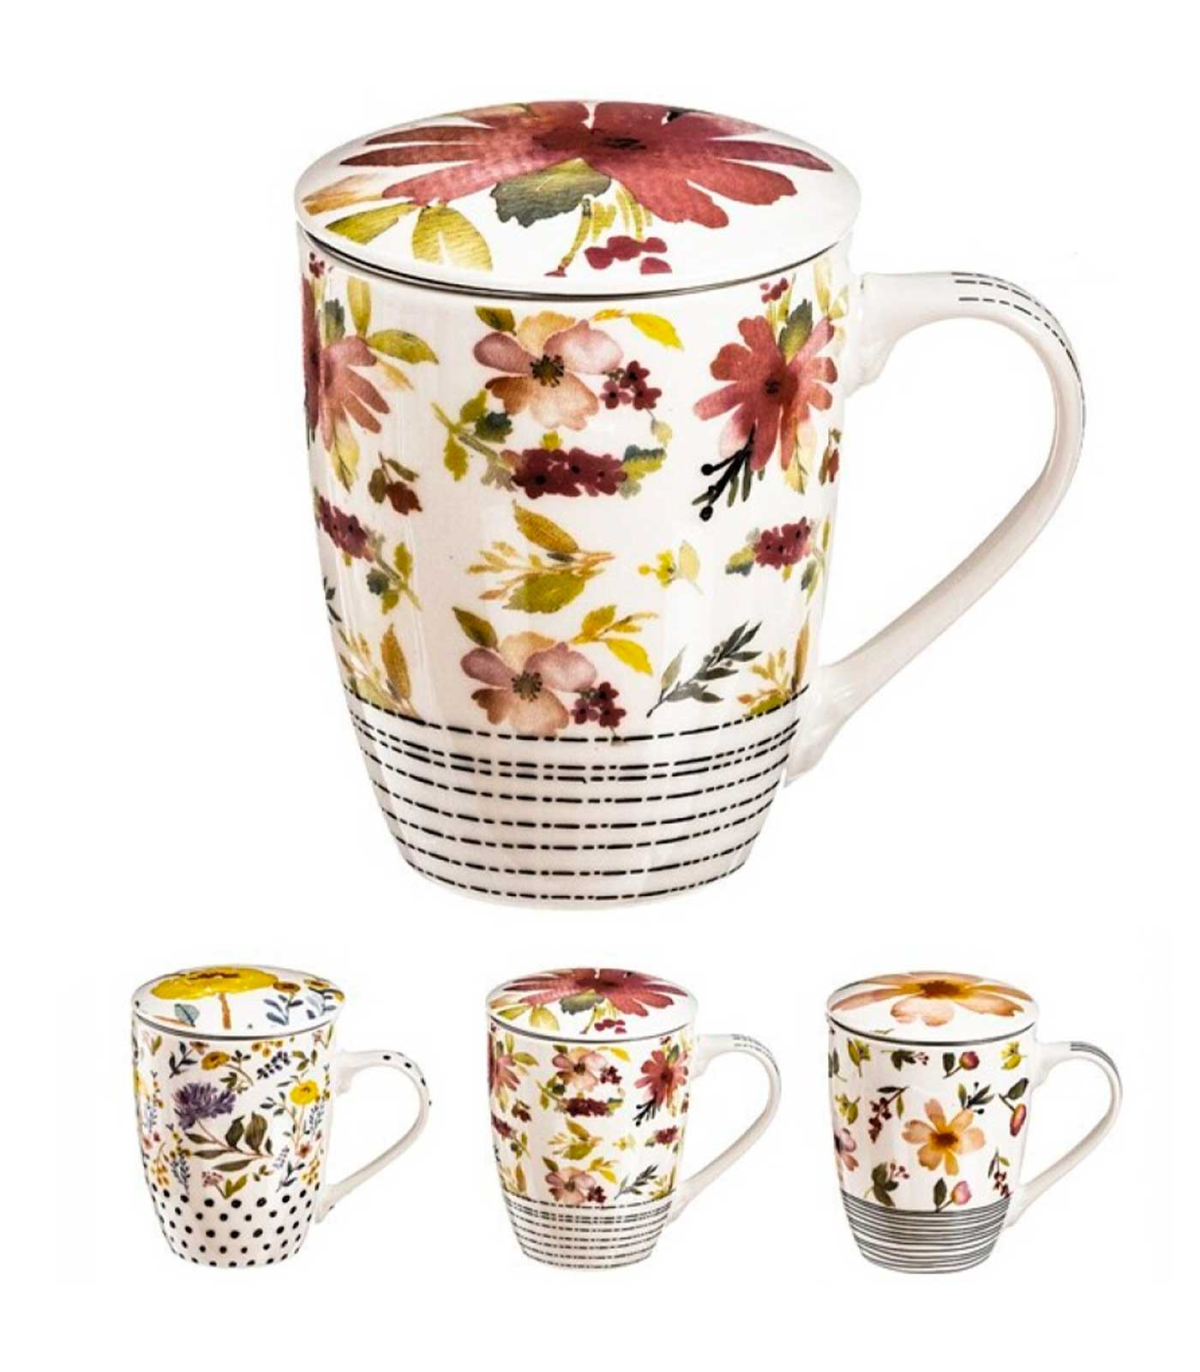 Tradineur - Taza de cerámica con dibujos y frases divertidas, taza para café,  té, infusiones, desayuno, apta para lavavajillas y